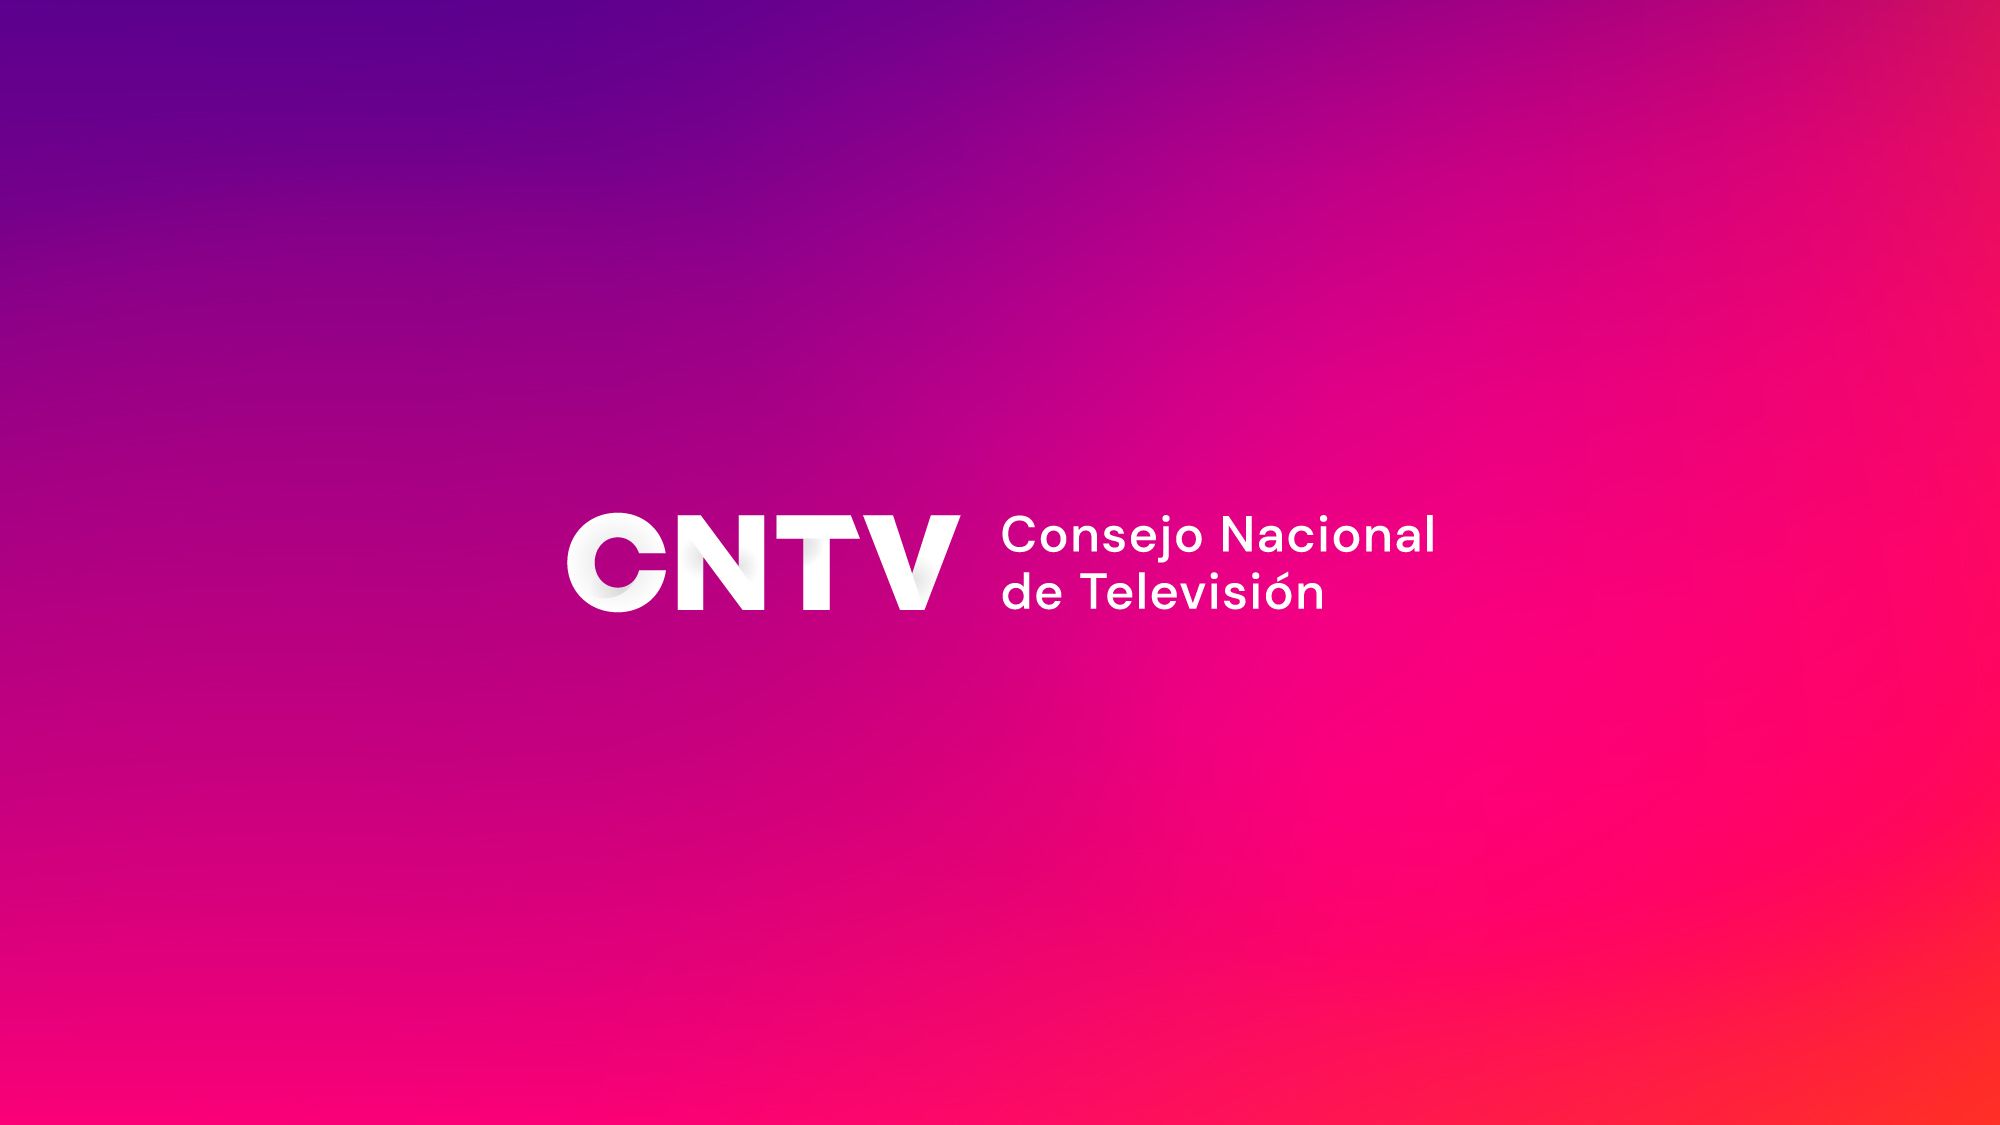 77% de los chilenos cree que es necesario regular discursos de odio, según encuesta del CNTV